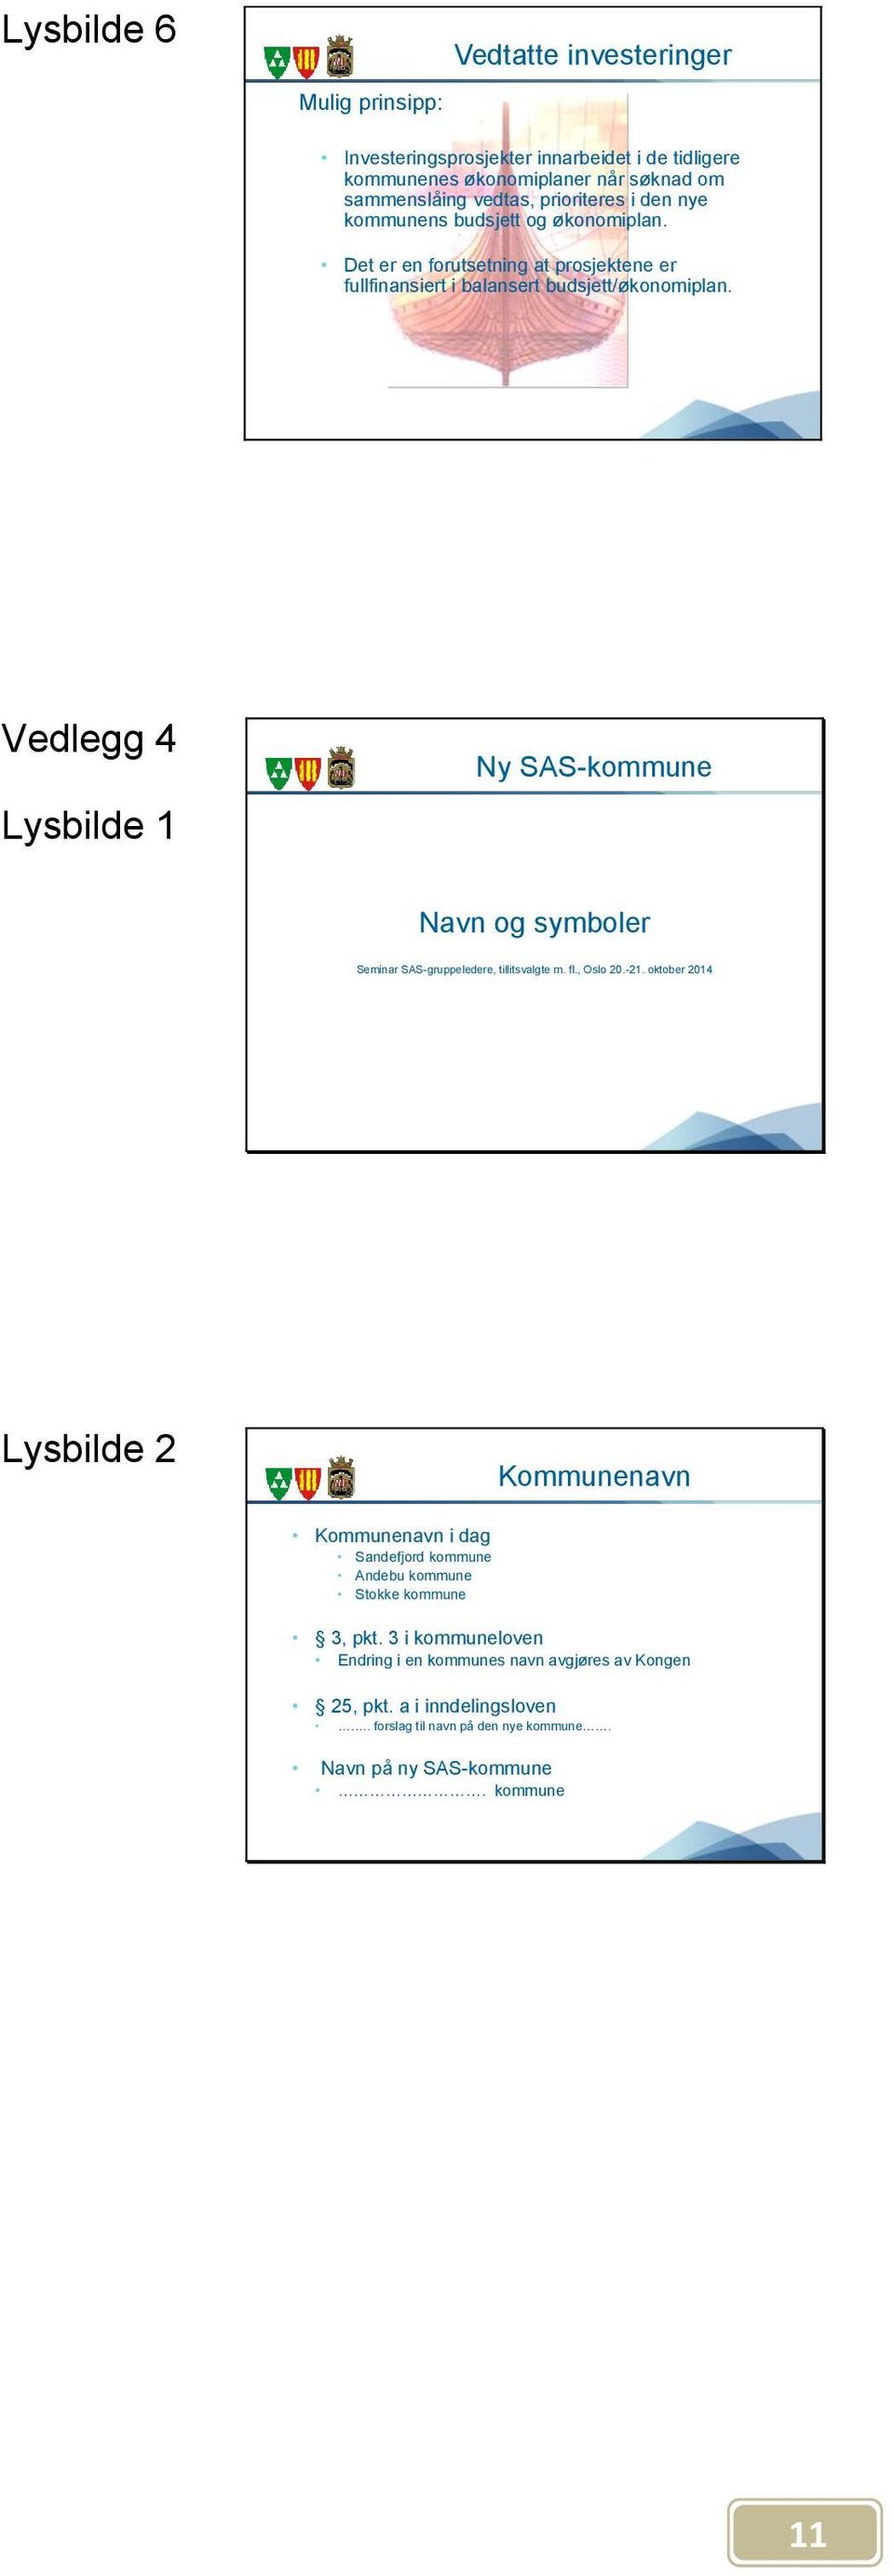 Vedlegg 4 Ny SAS-kommune Lysbilde 1 Navn og symboler Seminar SAS-gruppeledere, tillitsvalgte m. fl., Oslo 20.-21.